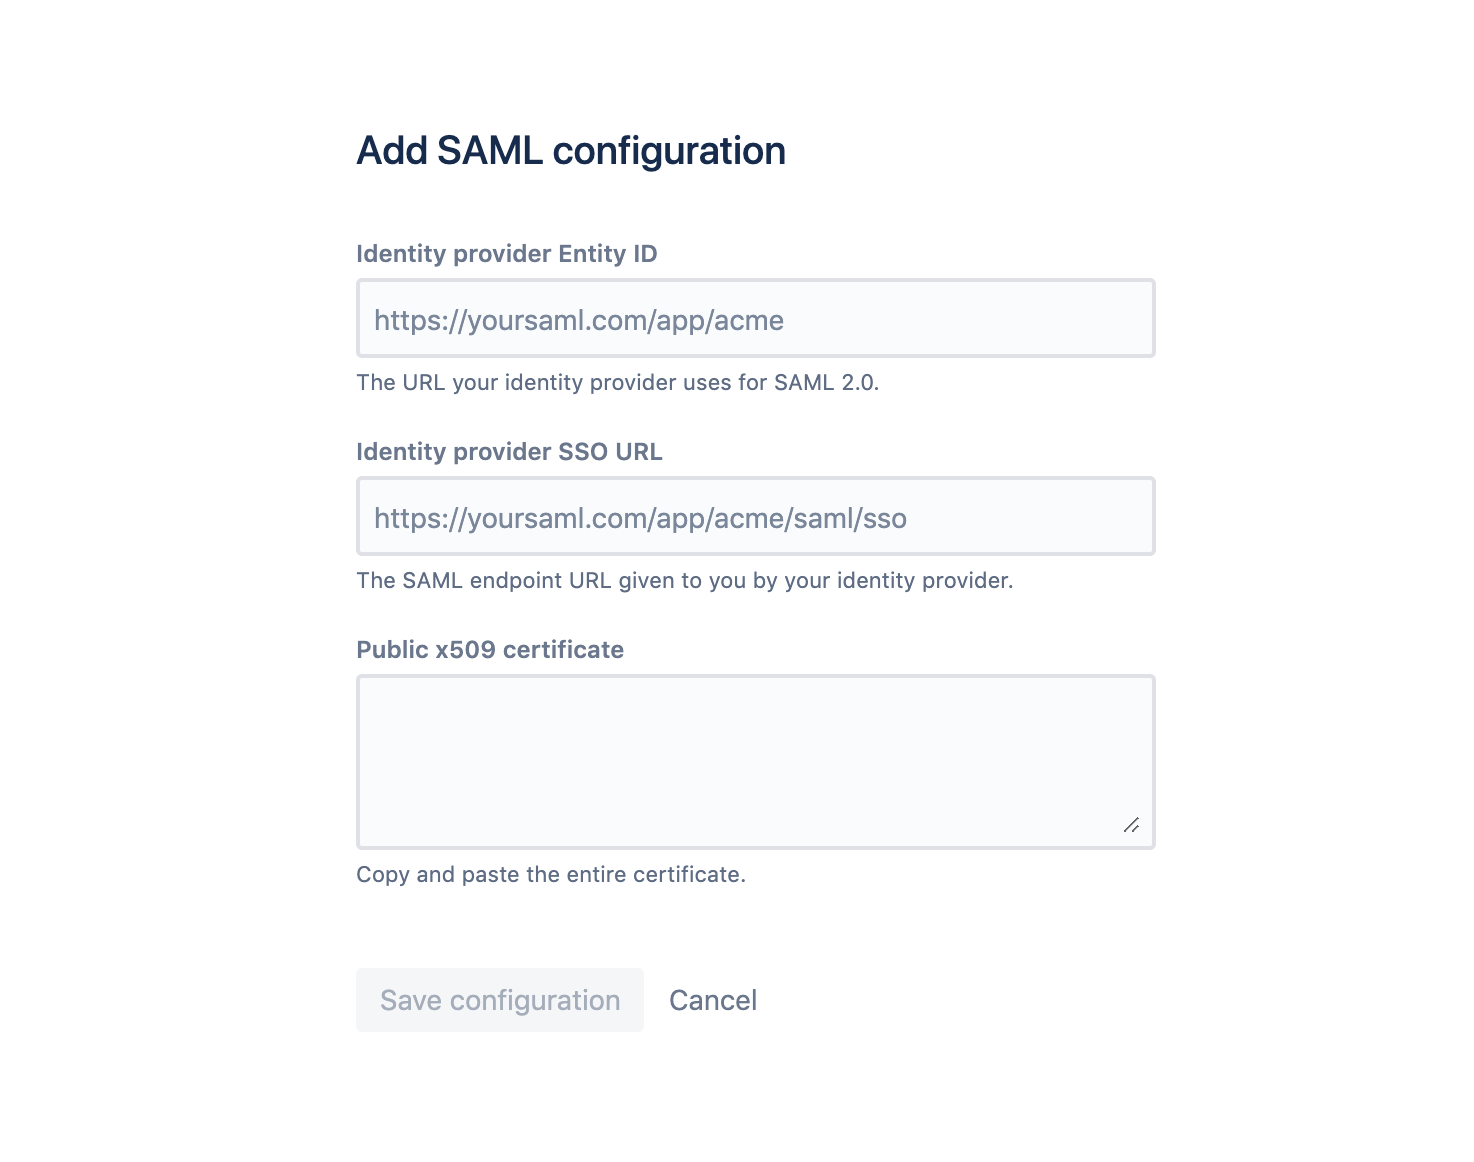 Add SAML configuration screen, includes Identity provider Entity ID, Identity provider SSO URL, and public x509 certificate